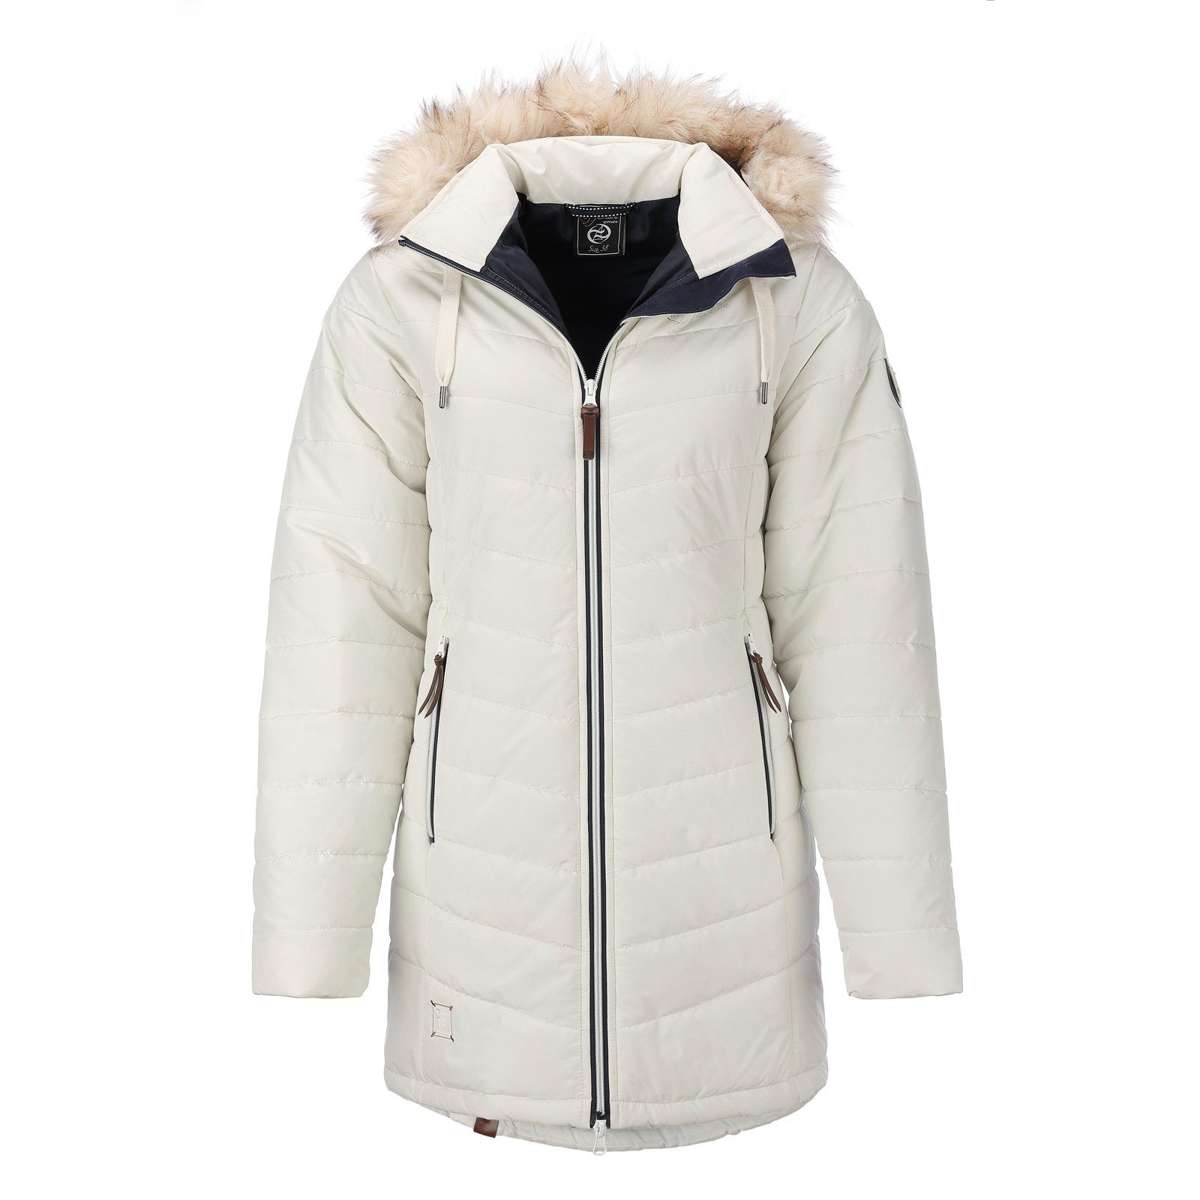 Стеганое пальто женское зимнее, куртка стеганая куртка Гетеборг со съемным капюшоном